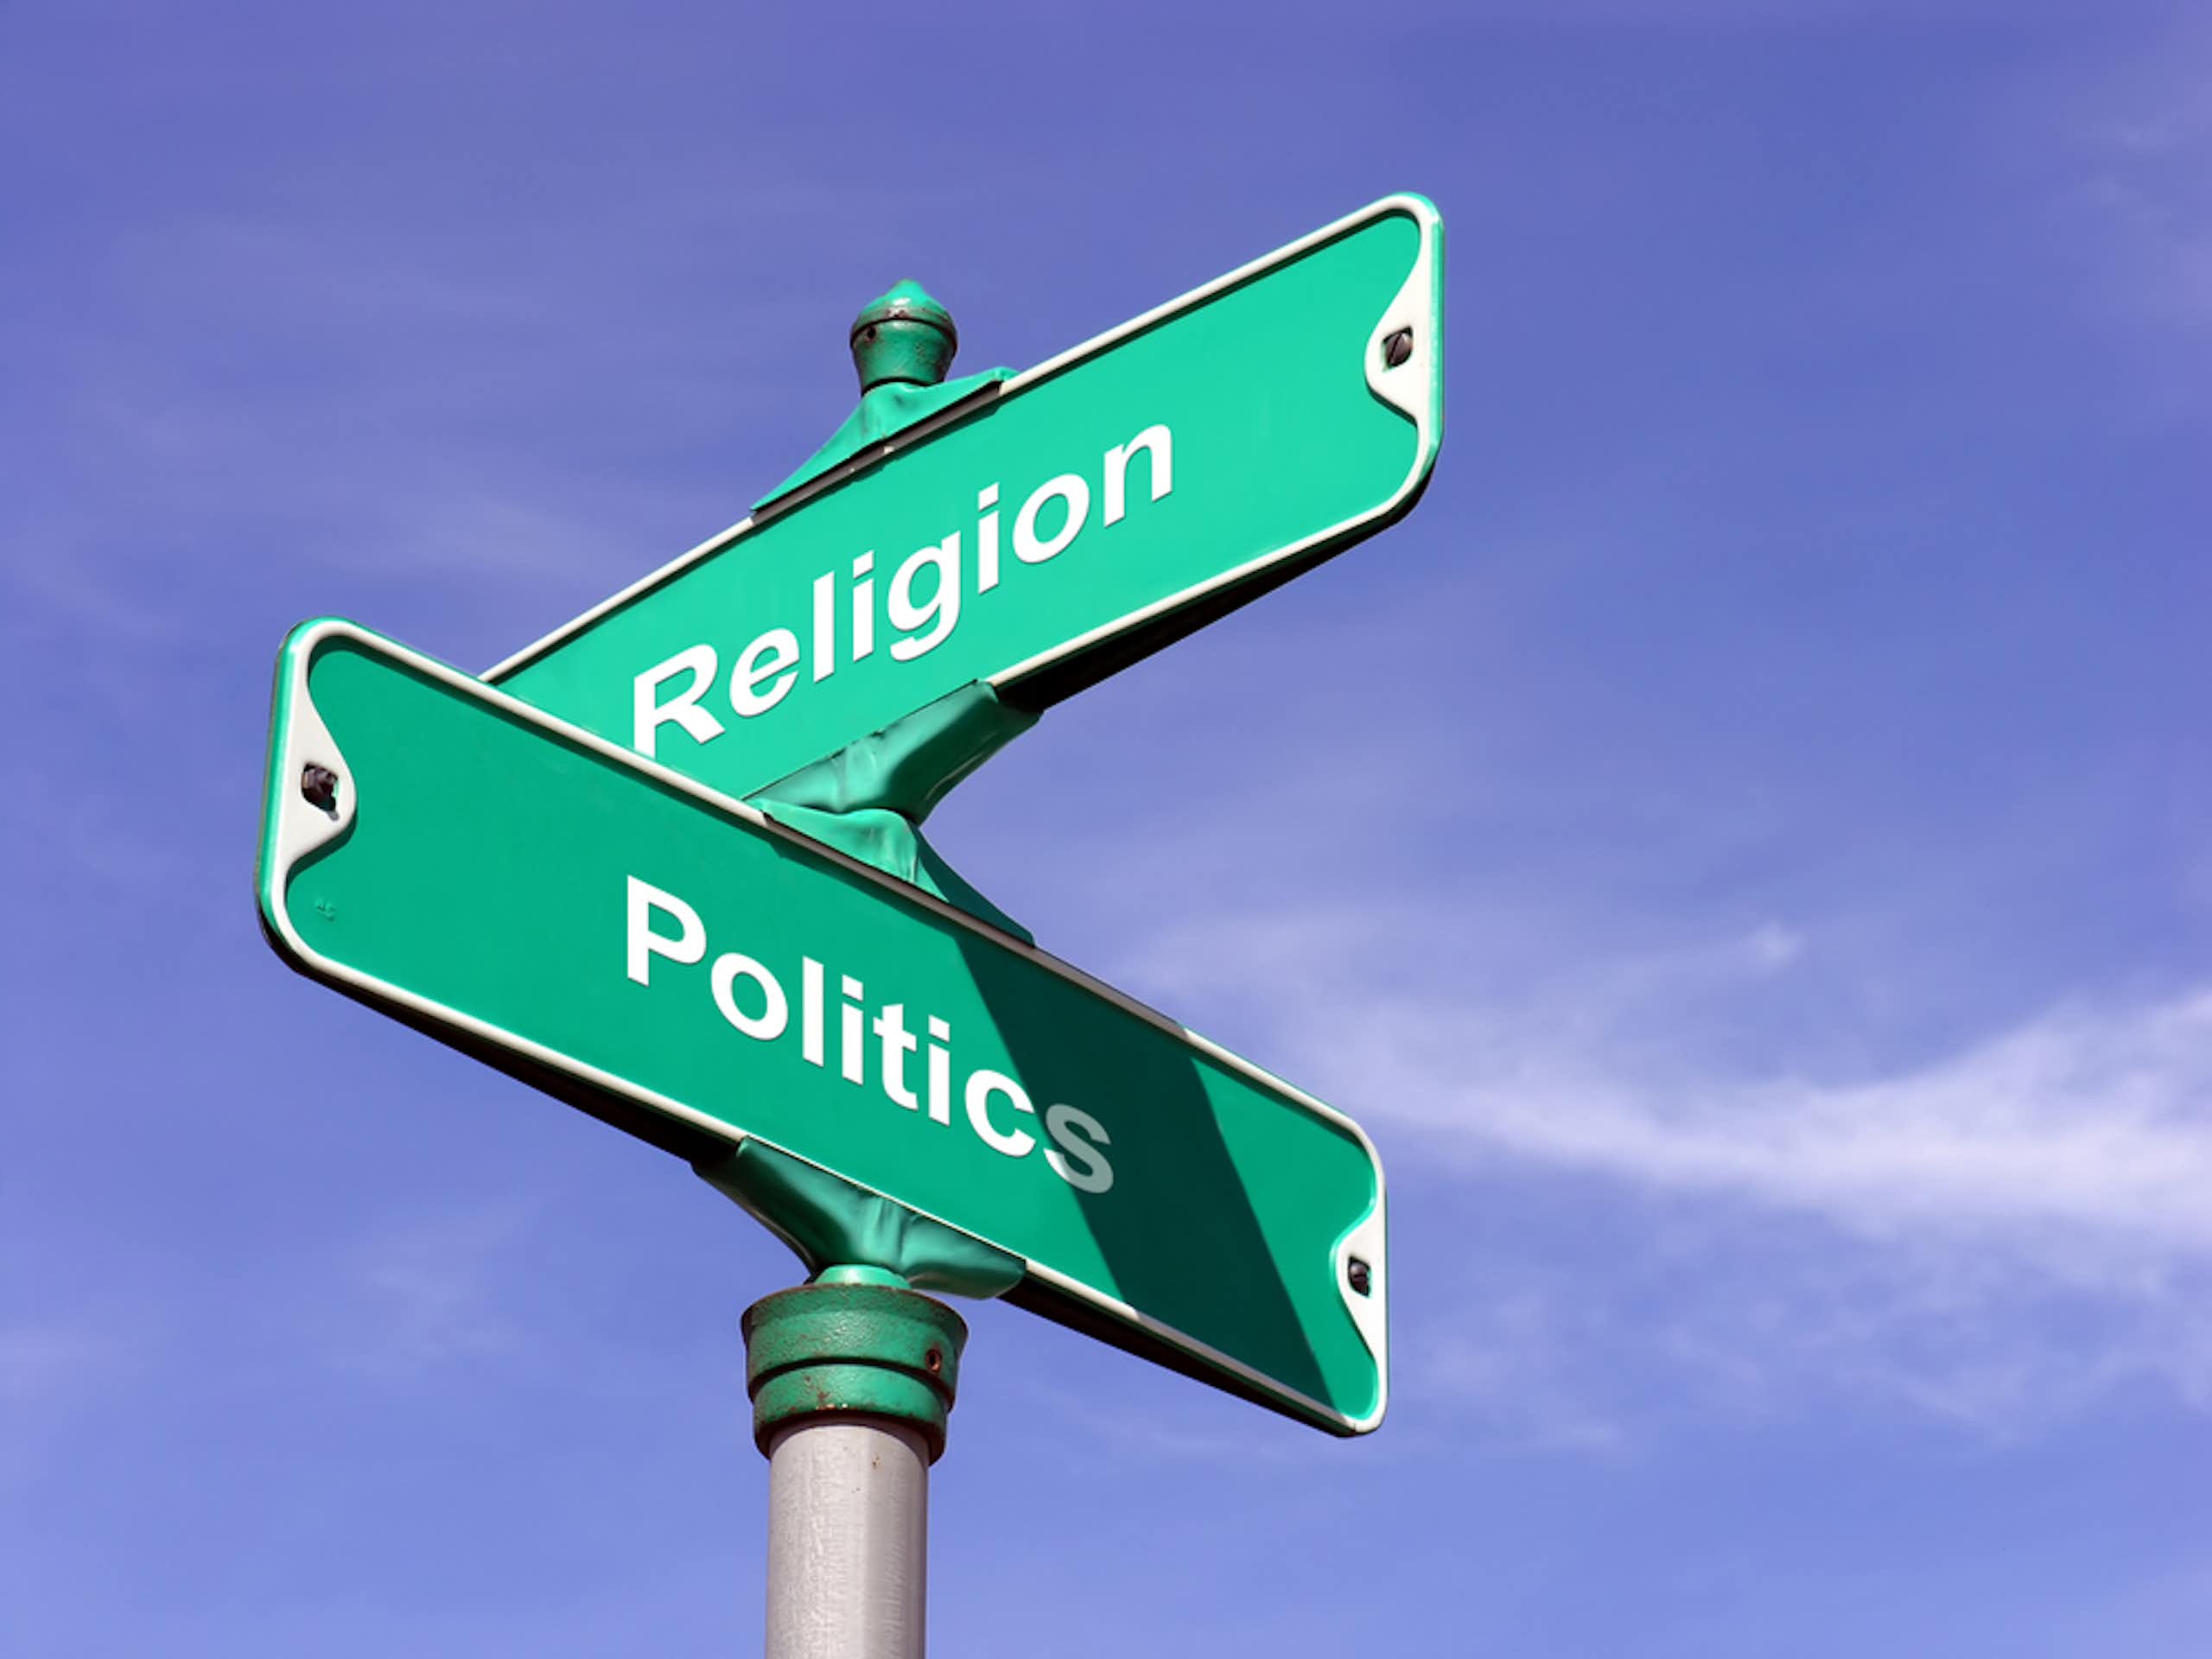 Peranan agama dalam sistem negara demokrasi: inspirasi atau politisasi?